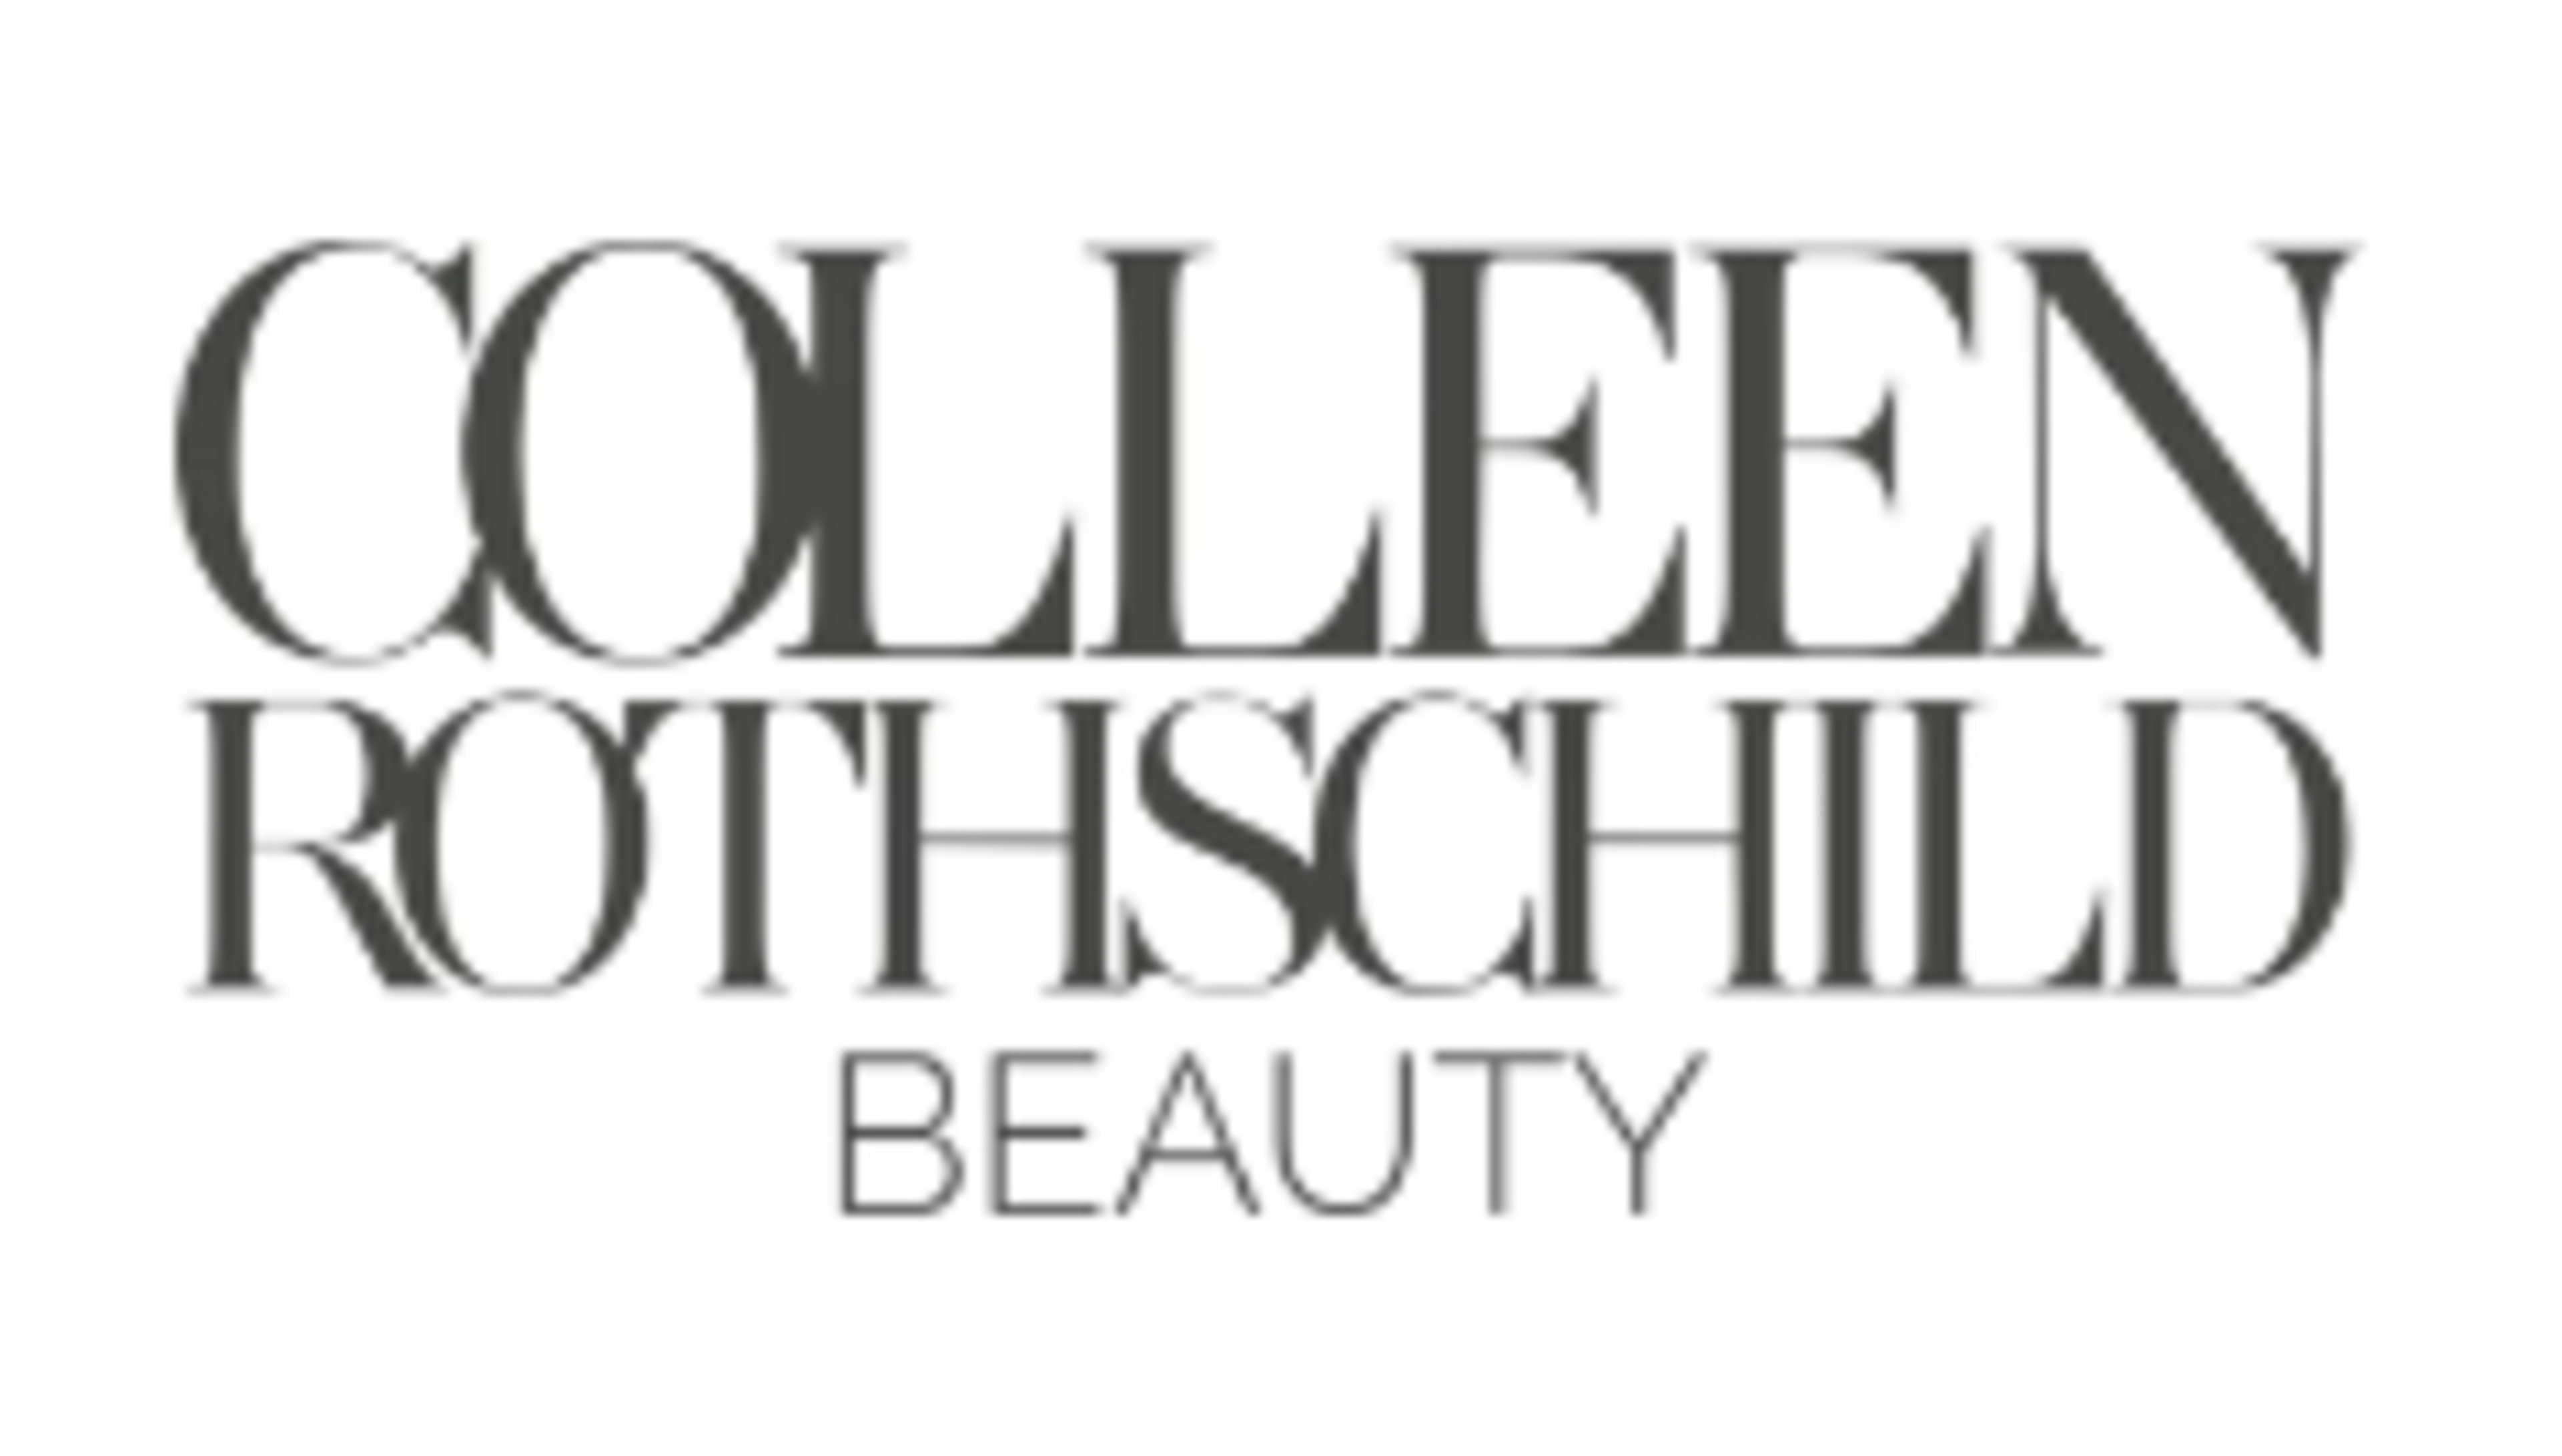 Colleen Rothschild Beauty Code